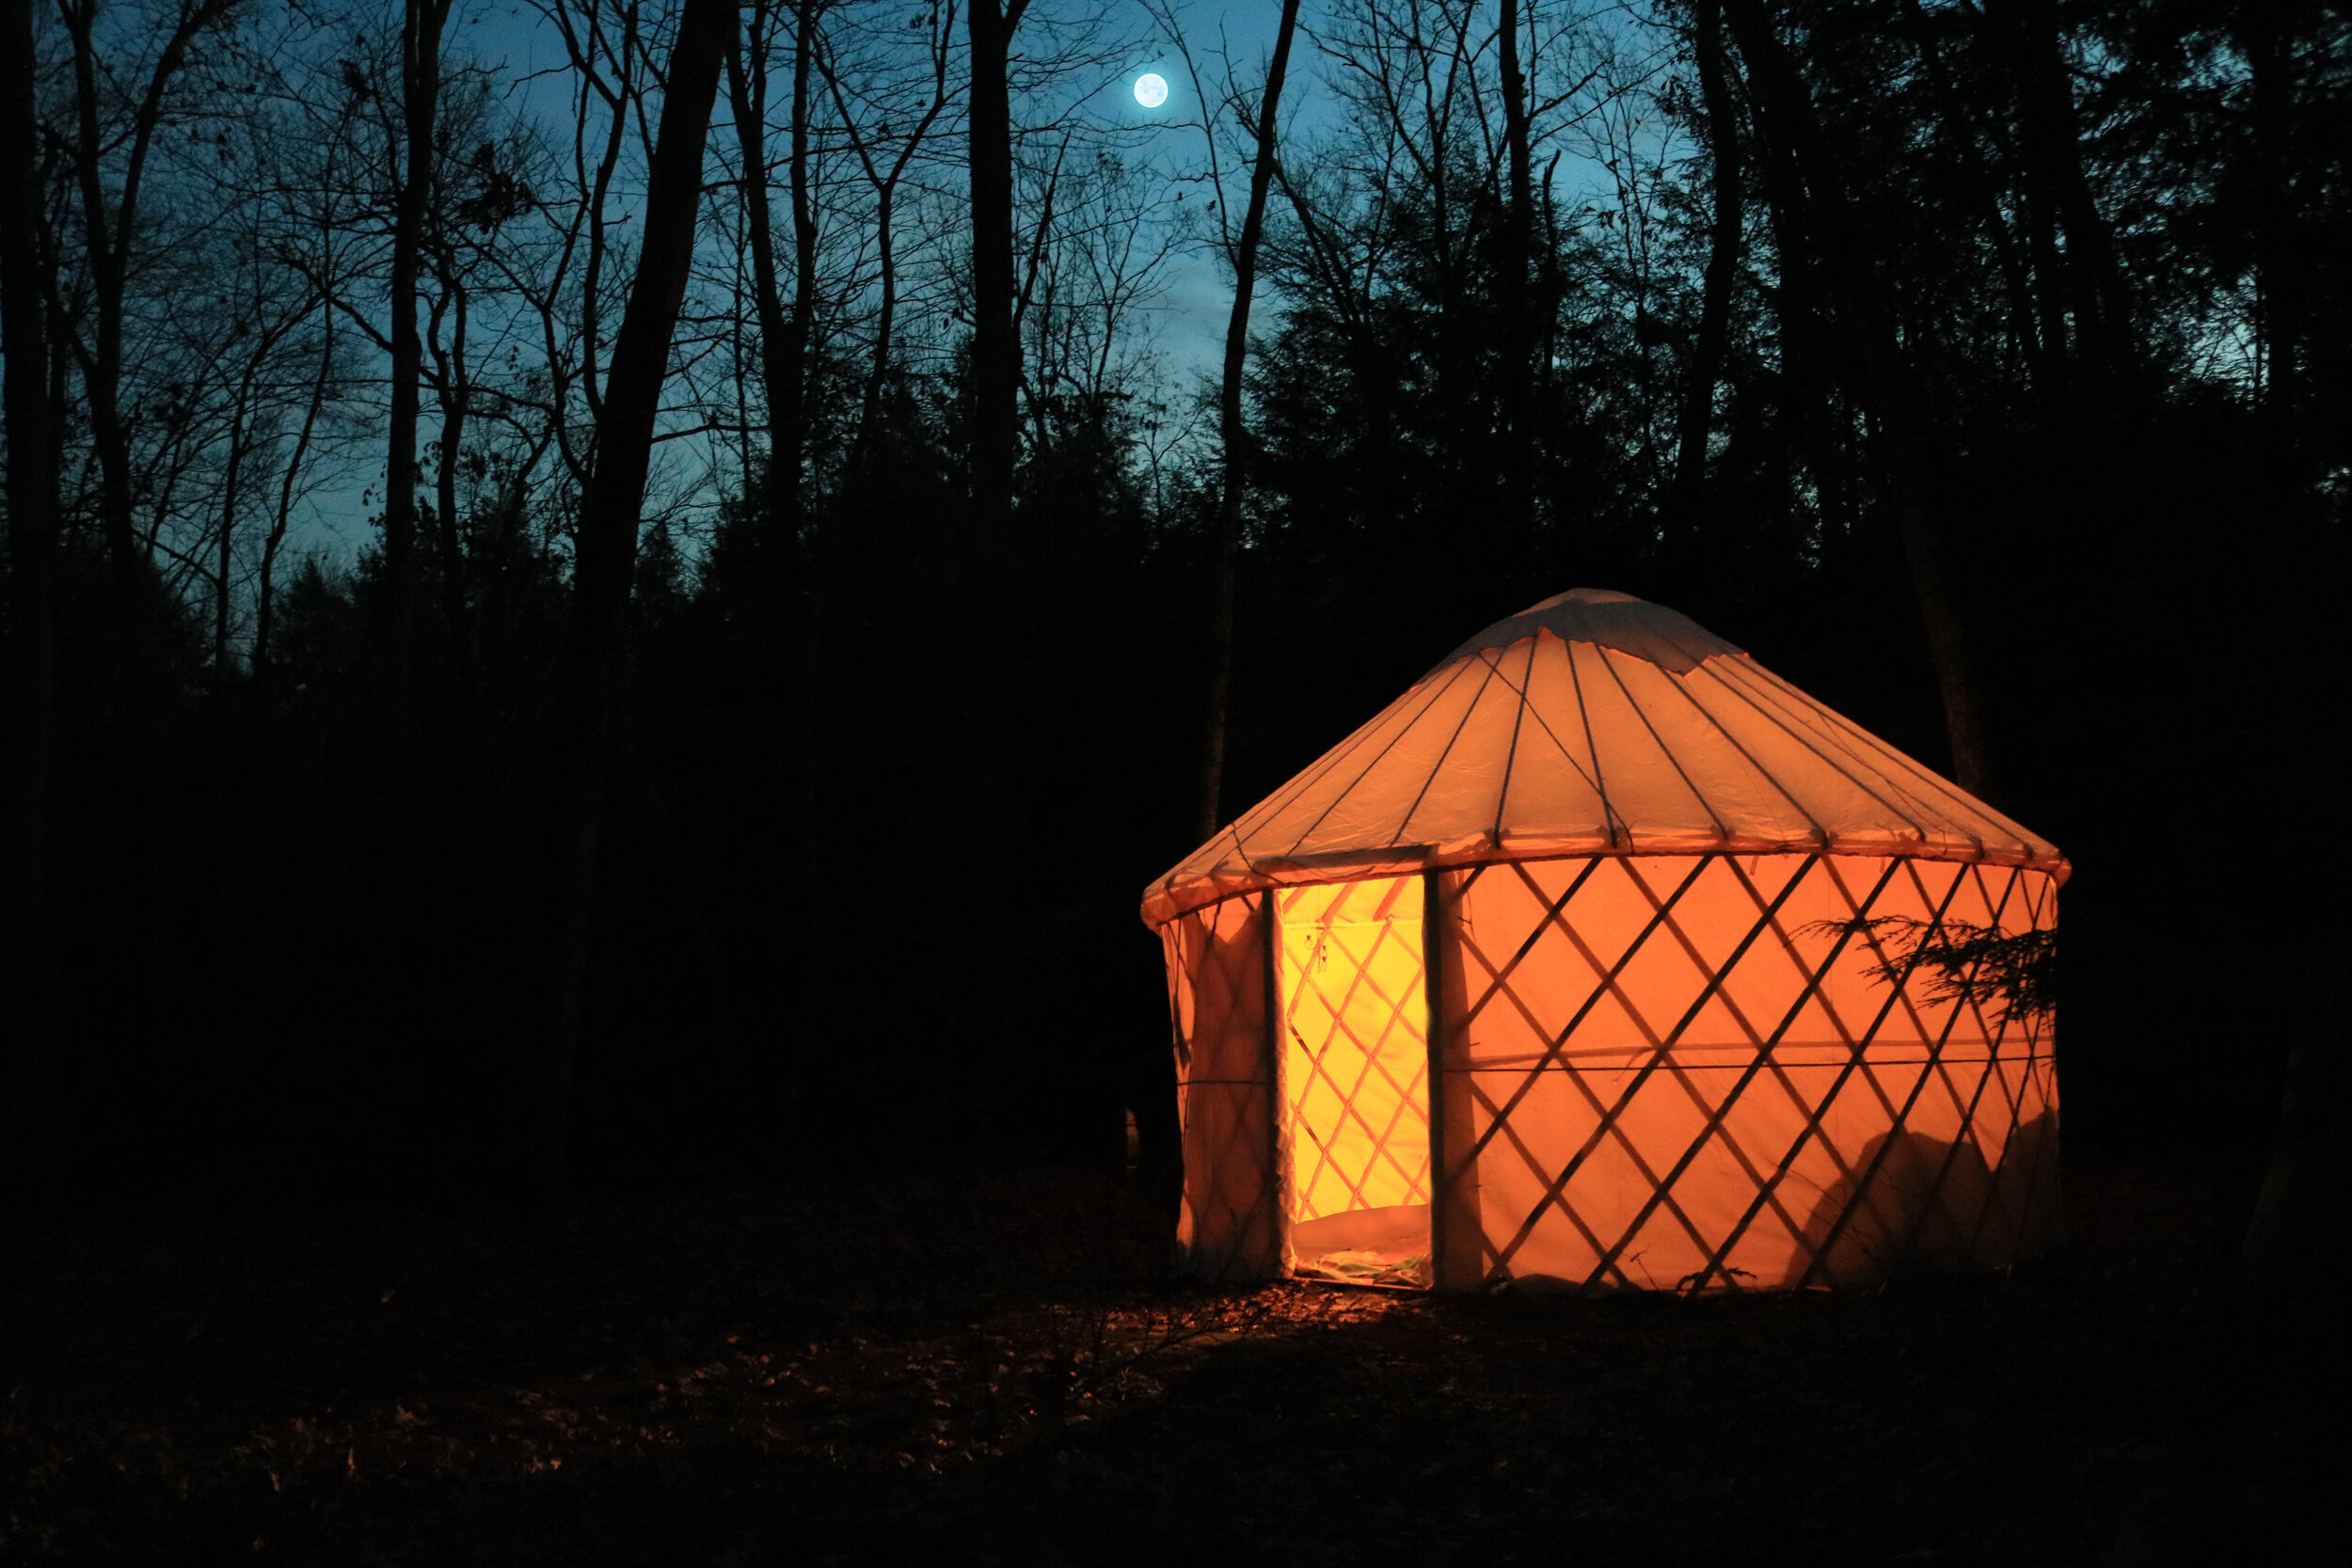 Camping yurt at dusk